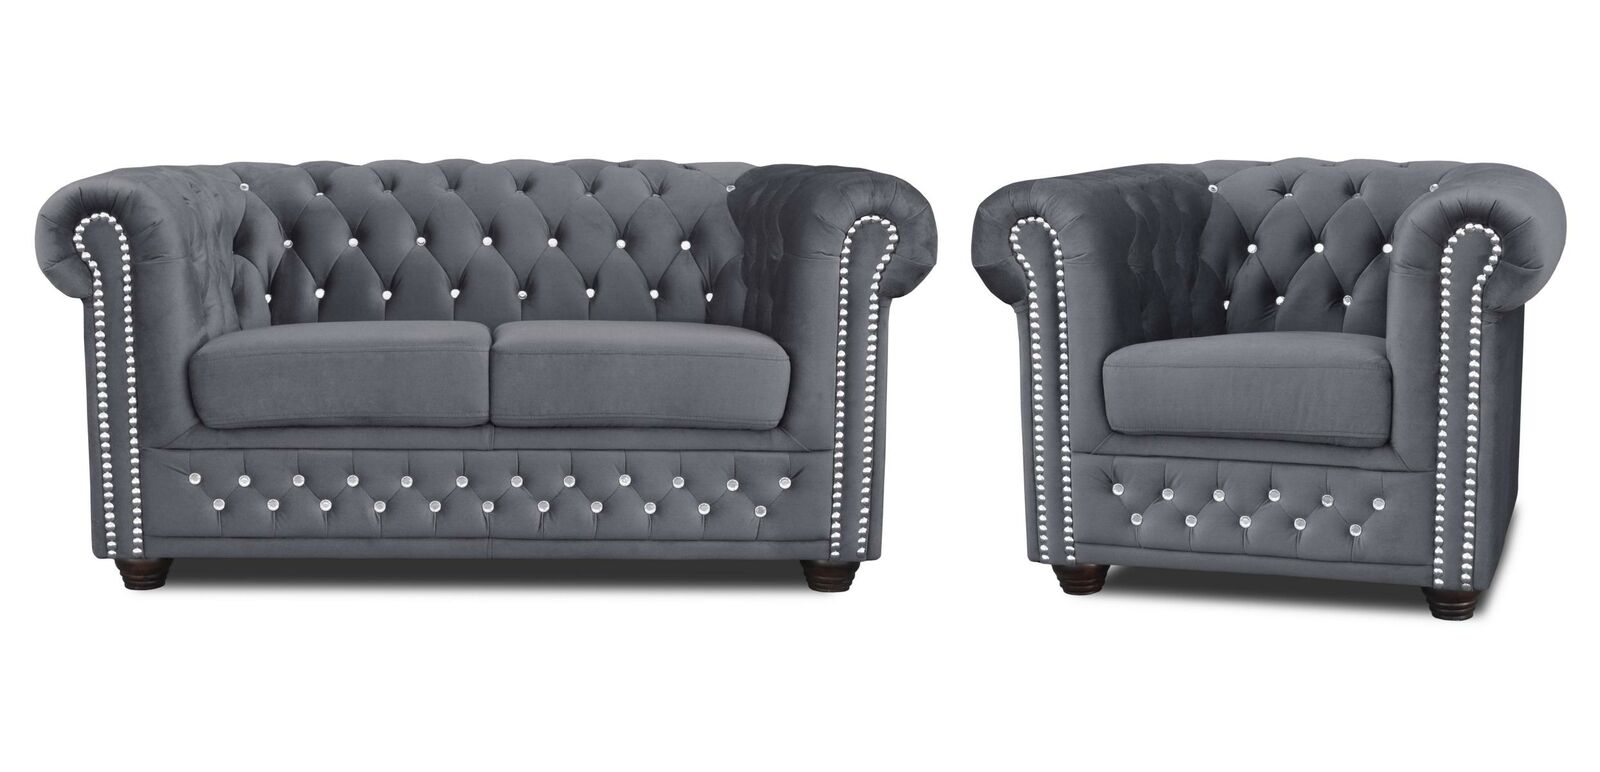 Chesterfield Sofagarnitur 2+1 Sitzer Design Couch Polster Sofa Garnitur Set Neu